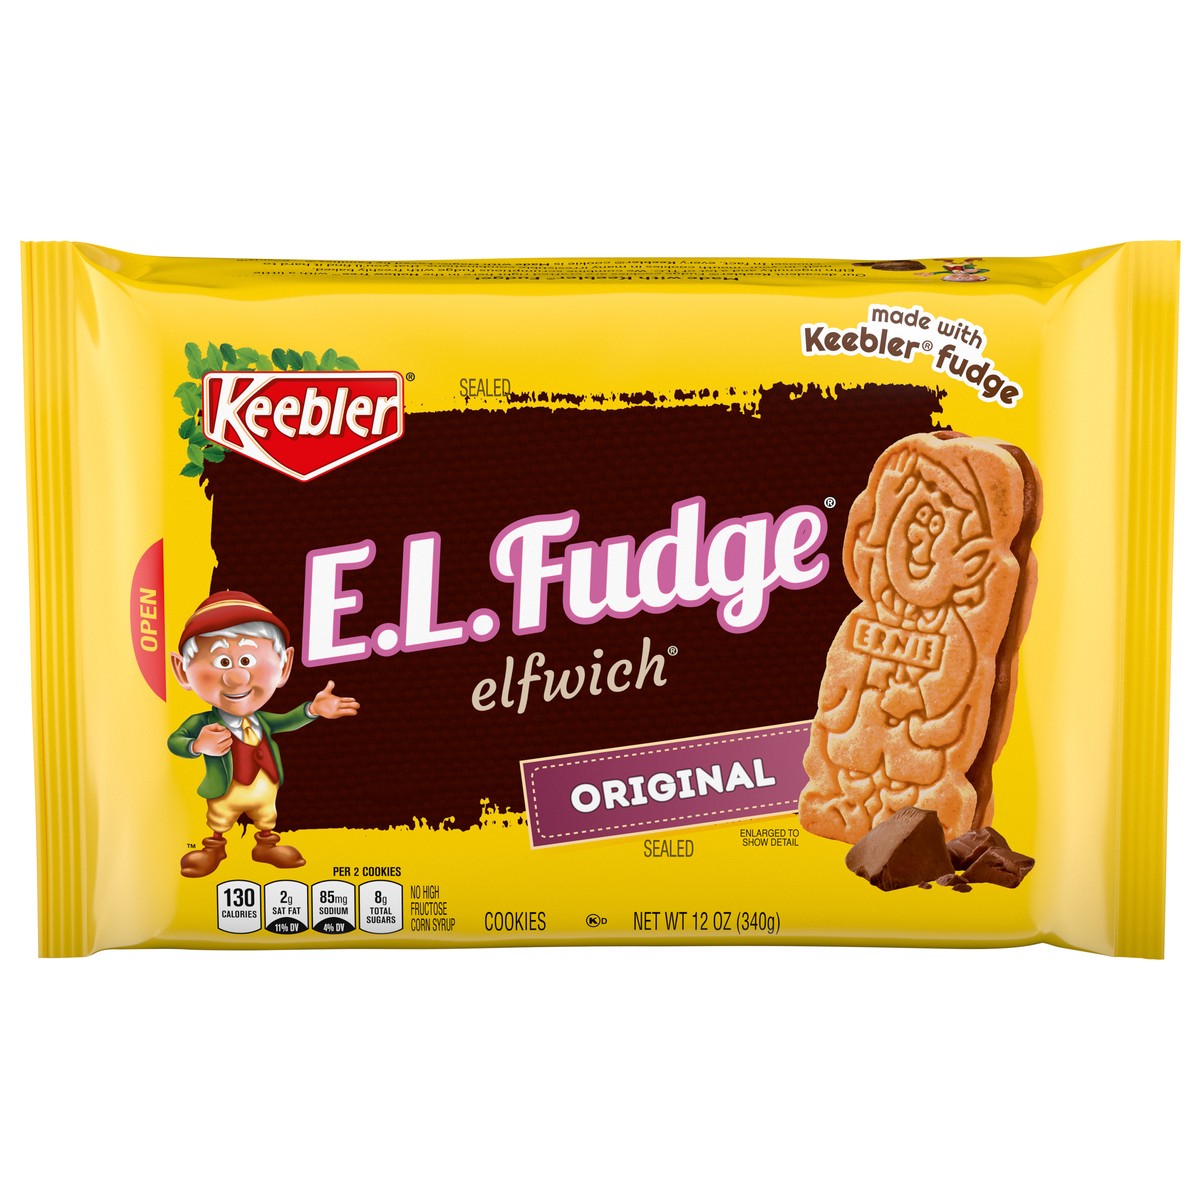 slide 1 of 11, Keebler E.L.Fudge Elfwich Cookies, Original, 13.6 oz